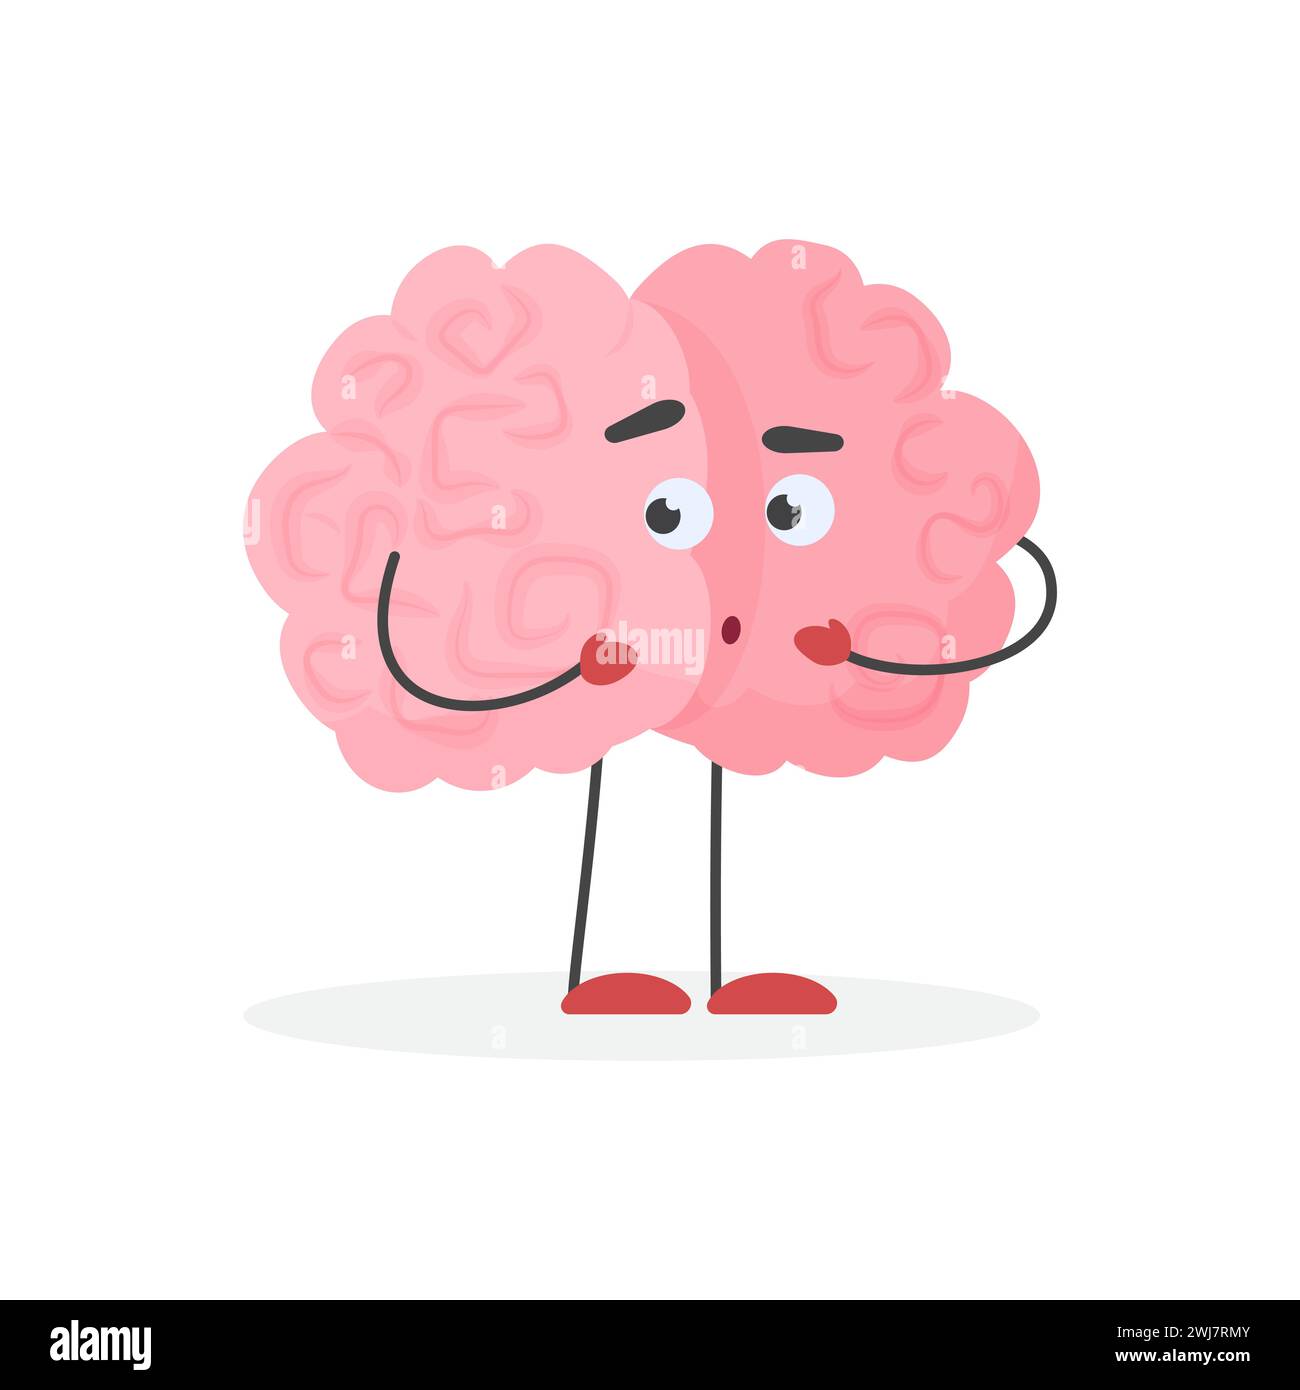 Caractère mignon de cerveau humain confus, illustration vectorielle d'émoticône nerveuse et timide Illustration de Vecteur